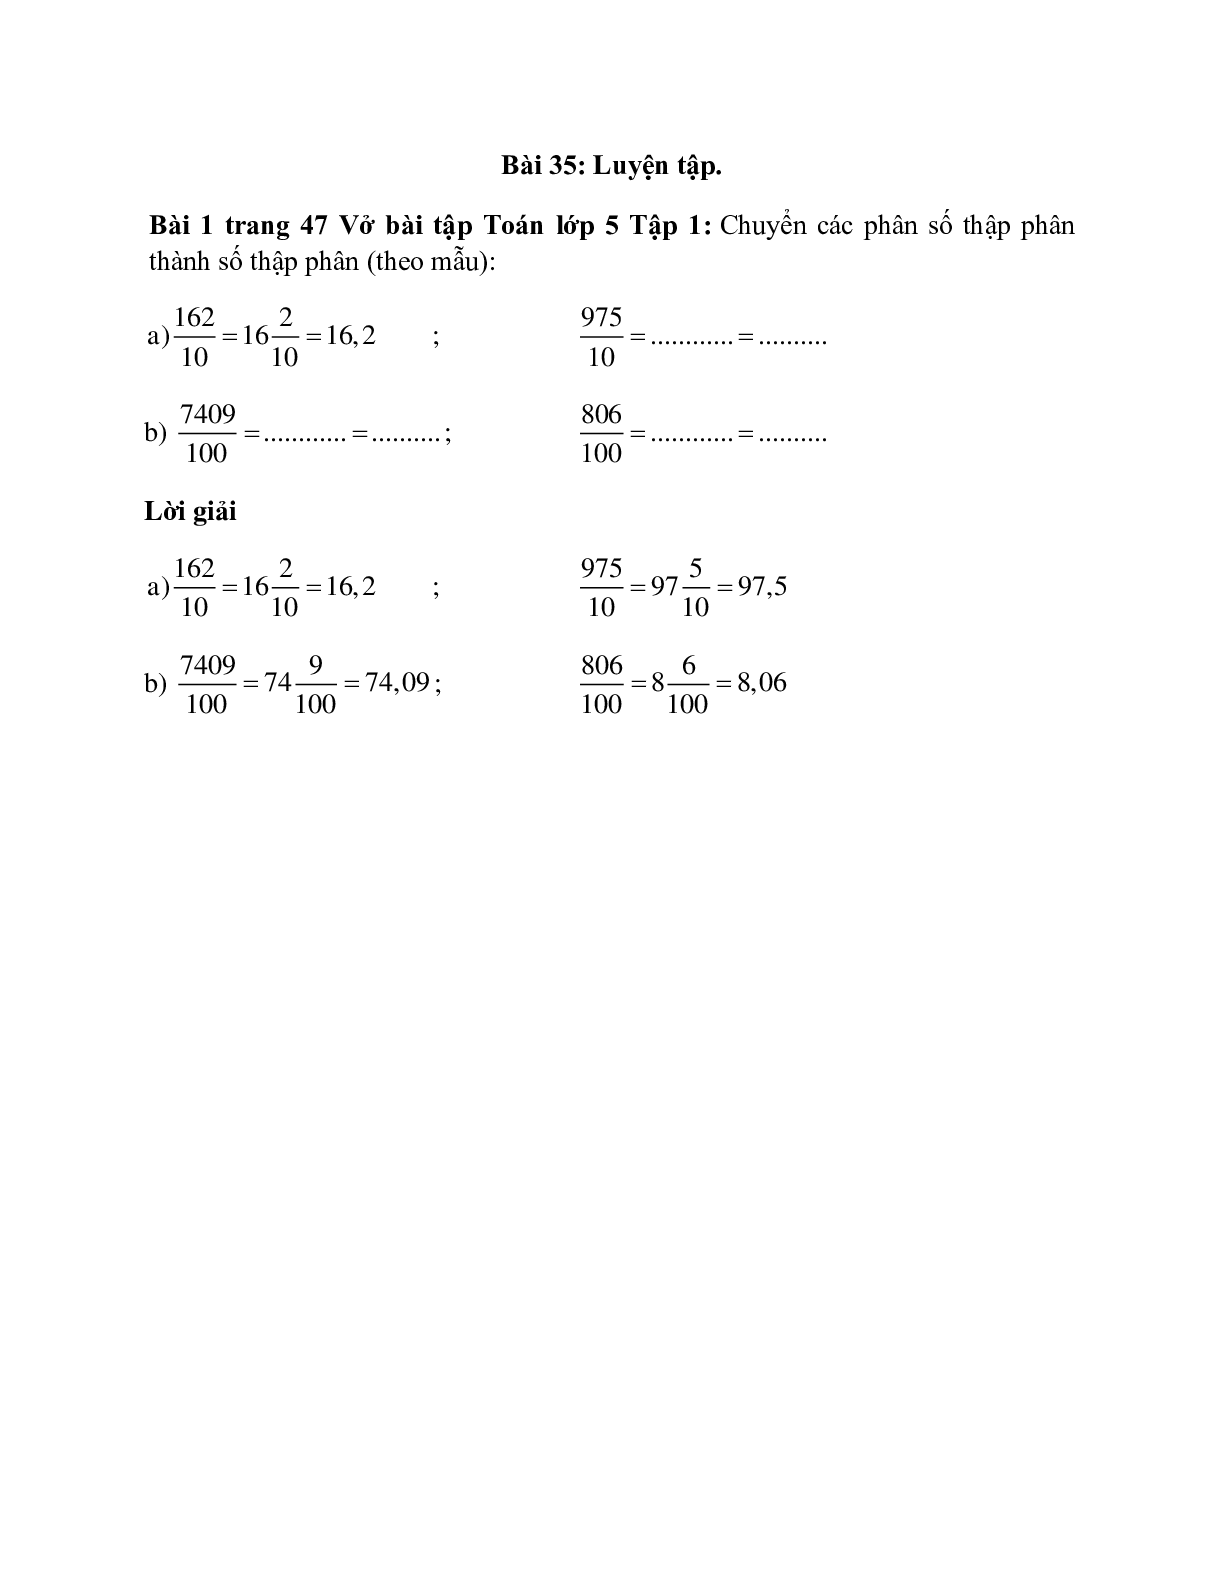 Chuyển các phân số thập phân thành số thập phân (theo mẫu): 162/10 = 16 2/10 = 16,2 (trang 1)